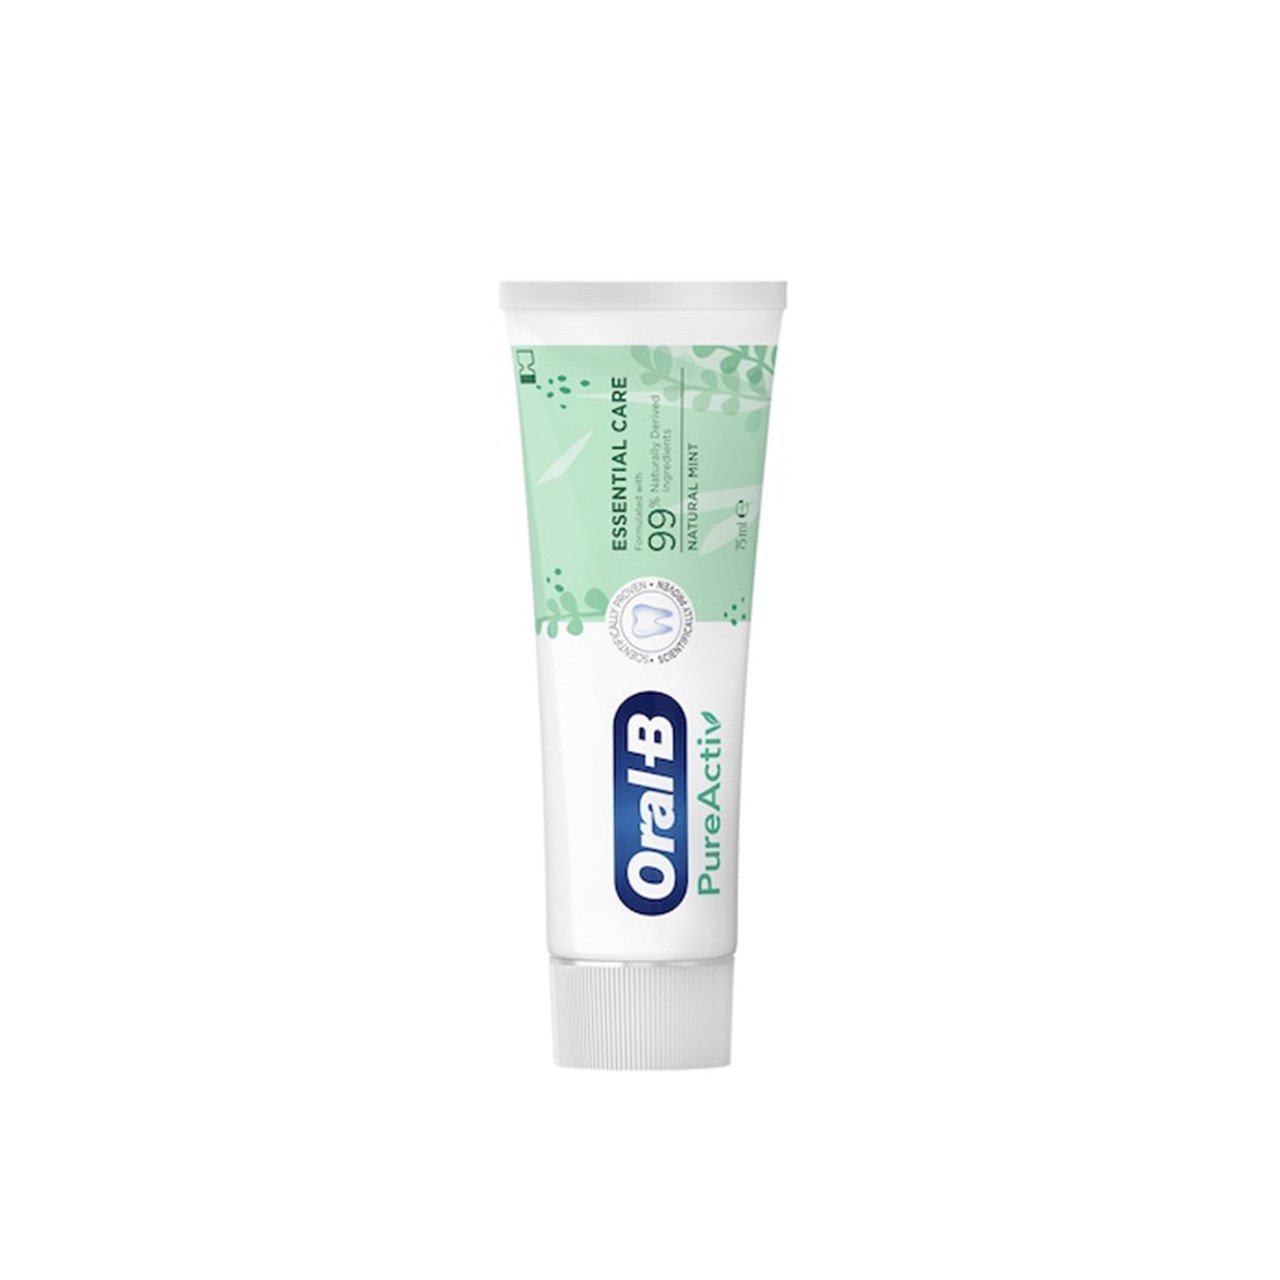 Schrijft een rapport onvoorwaardelijk Partina City Buy Oral-B PureActiv Essential Care Toothpaste 75ml (2.54fl oz) · USA